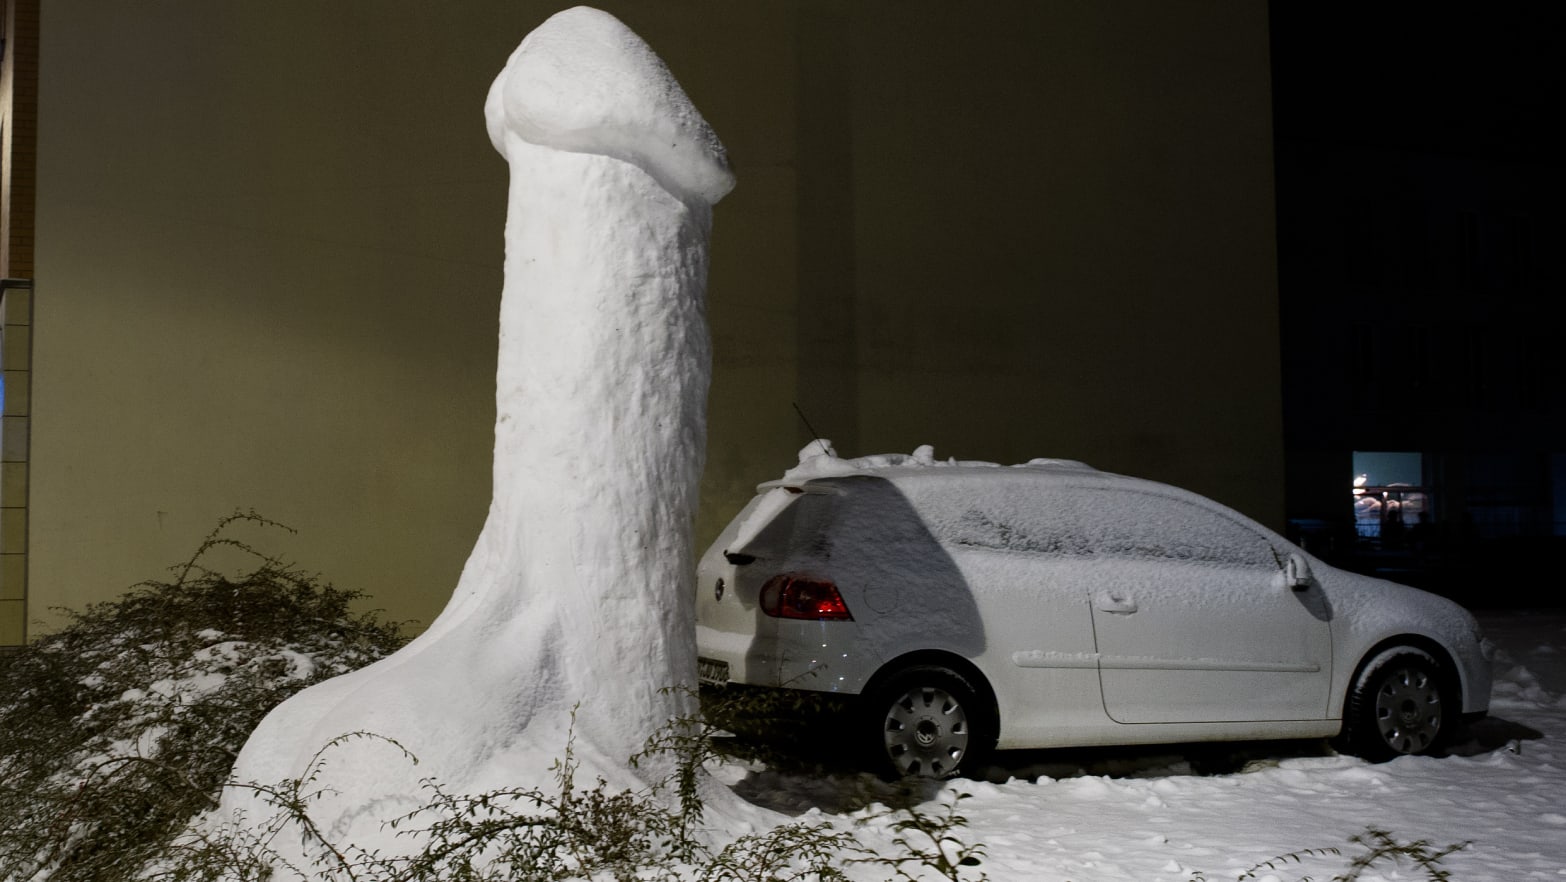 A giant snow phallus